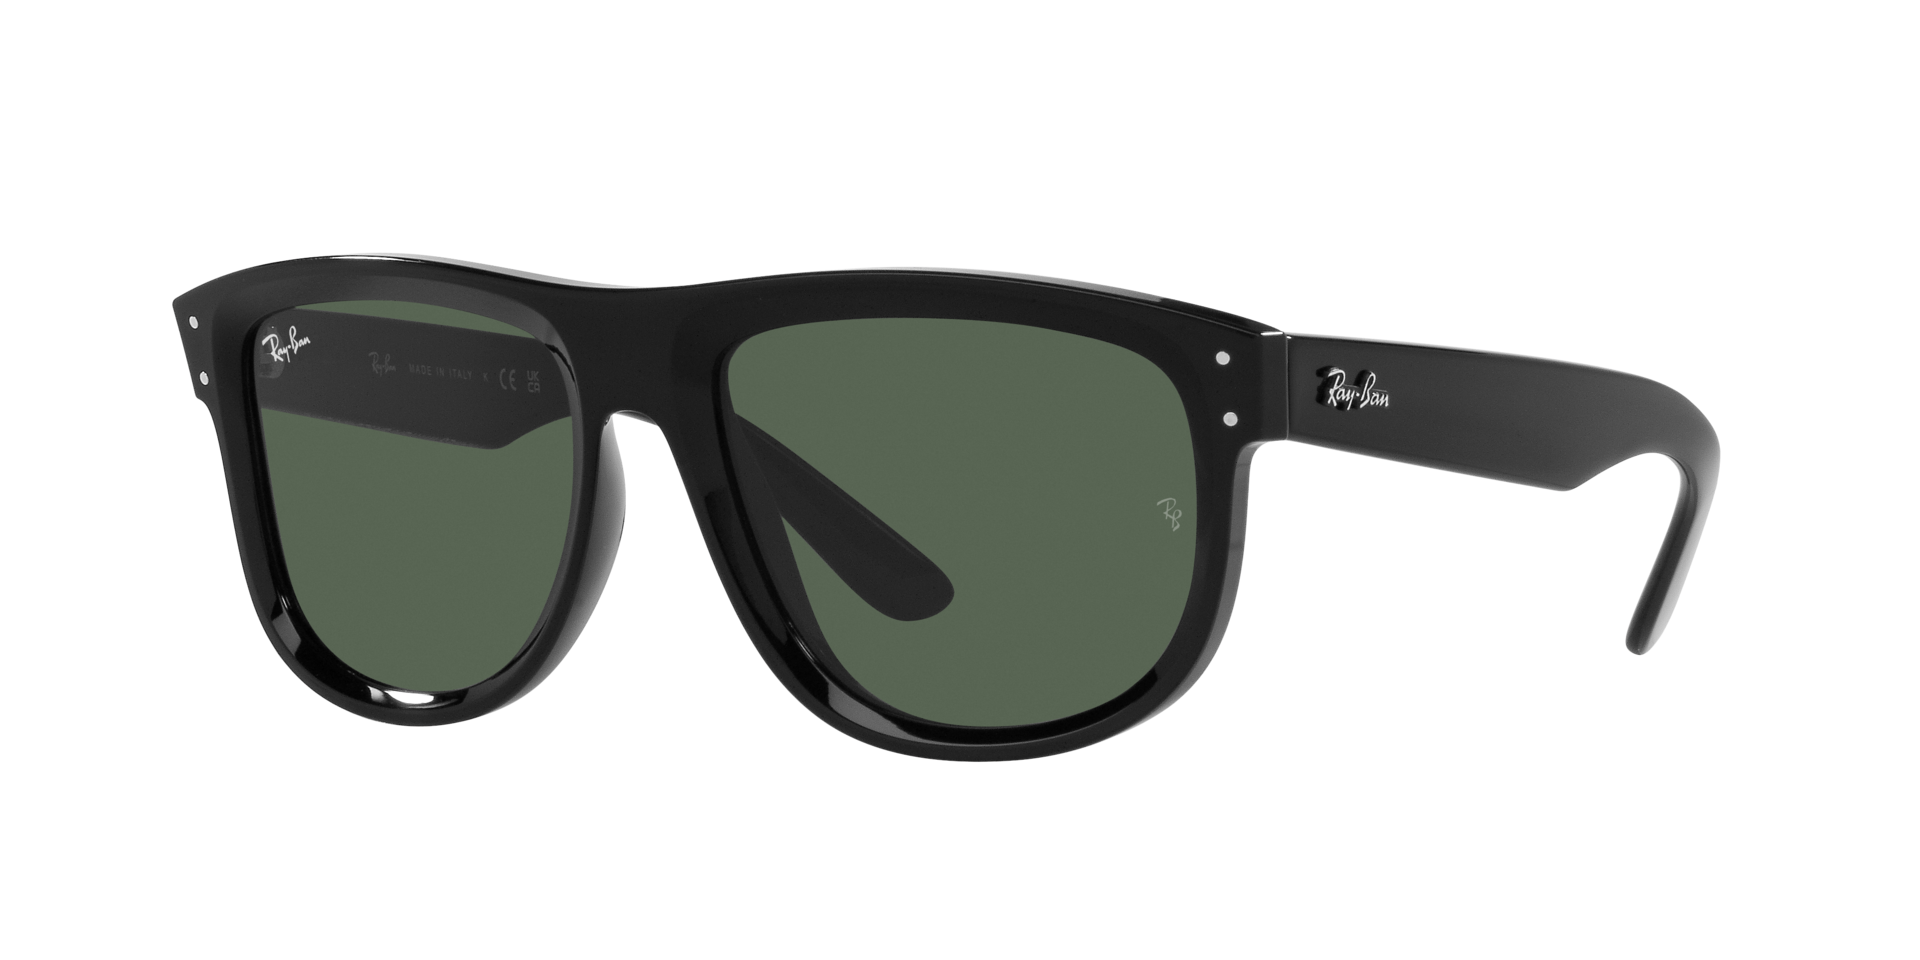 Das Bild zeigt die Sonnenbrille RBR0501S 6677VR von der  Marke Ray Ban in schwarz.